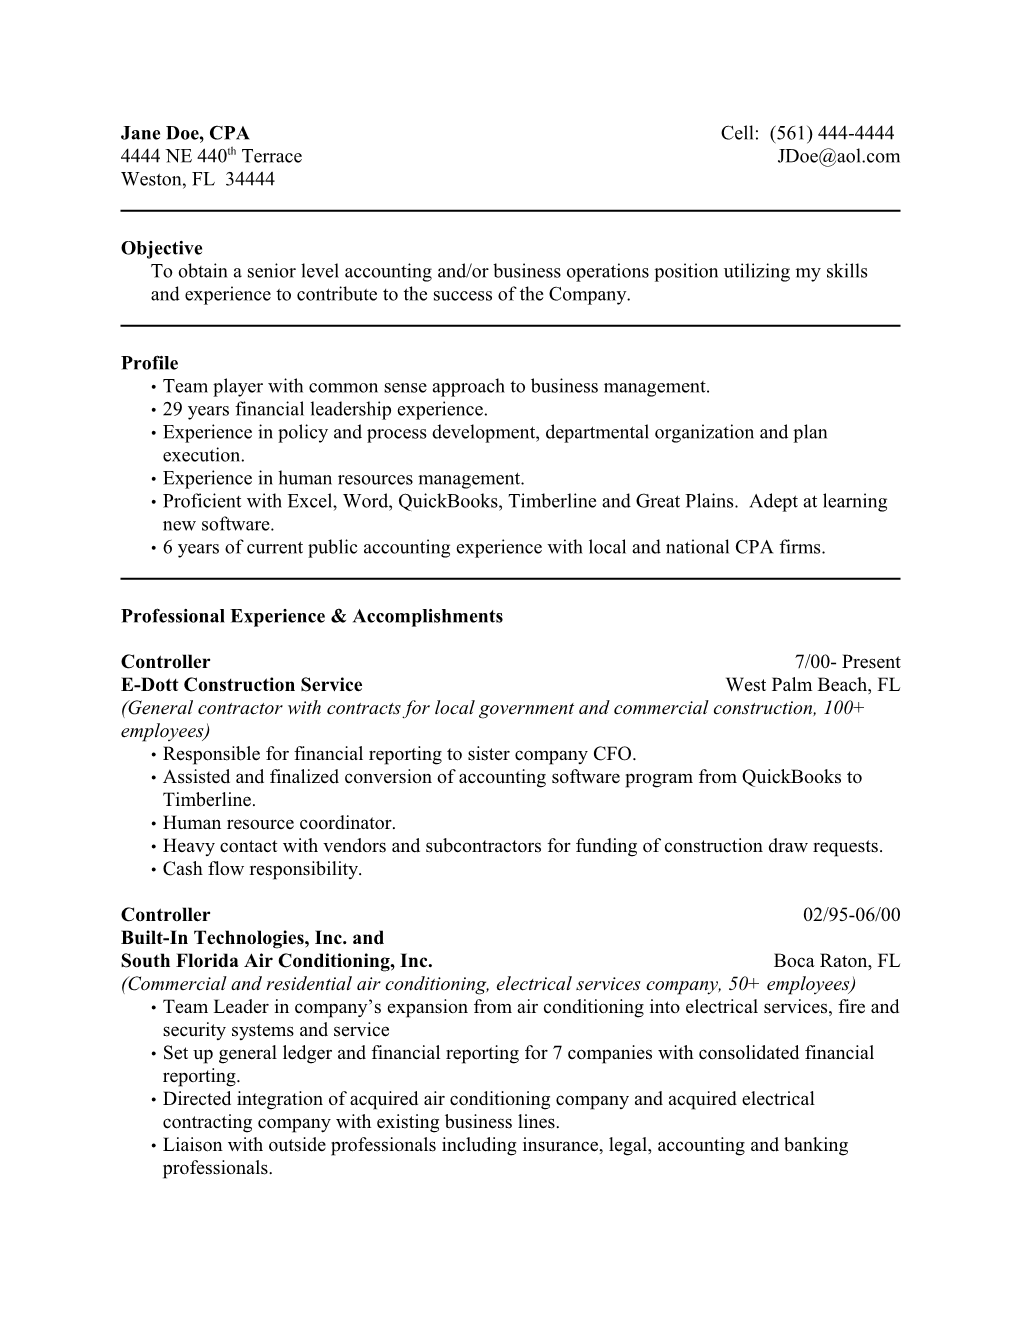 Sample CFO Resume